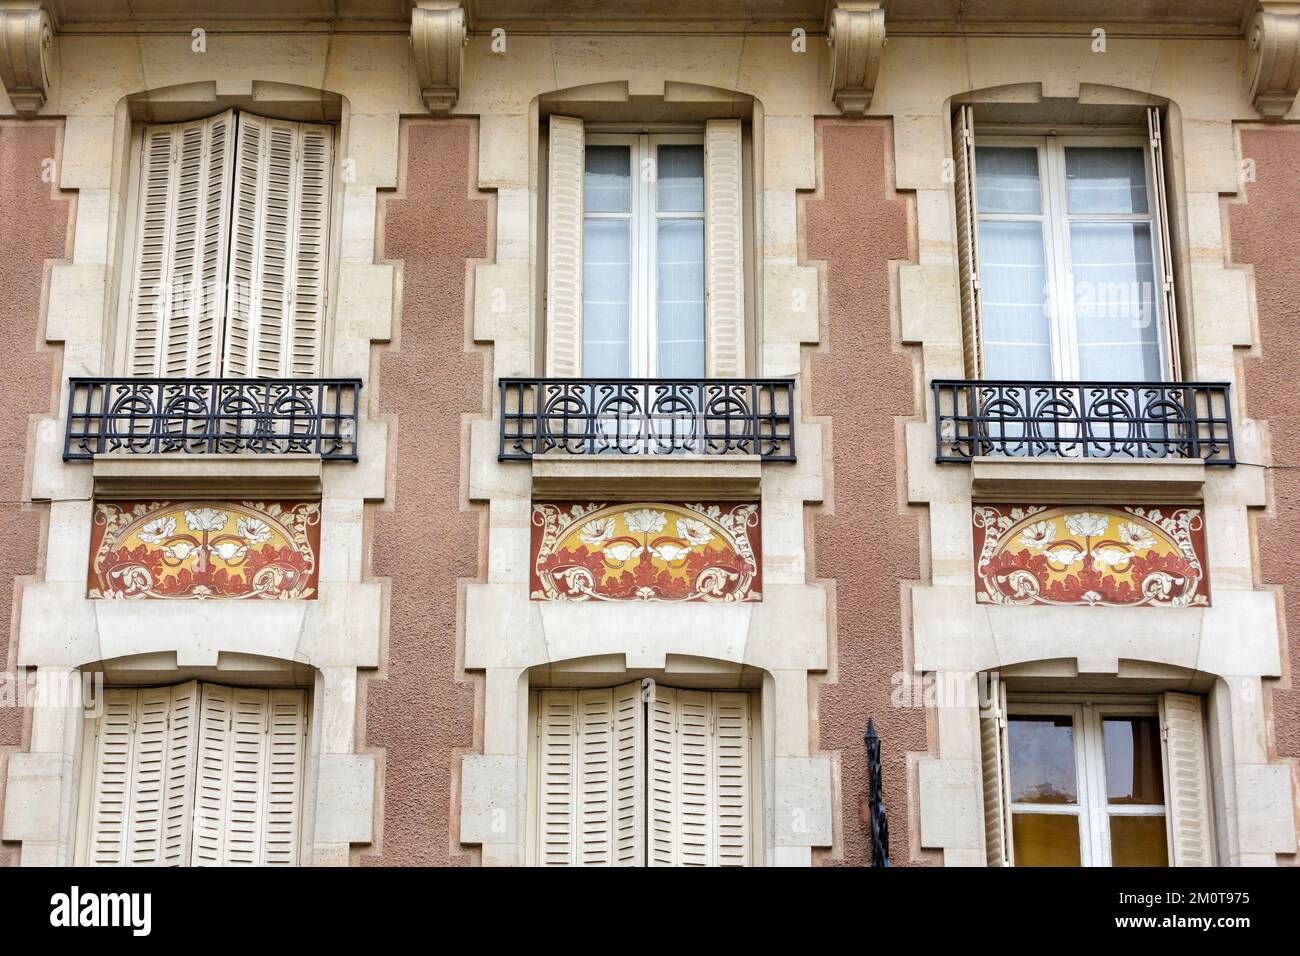 Francia, Meurthe et Moselle, Nancy, detalle de las decoraciones de la fachada que representan las flores de un edificio de estilo Art Nouveau situado rue Blandan Foto de stock